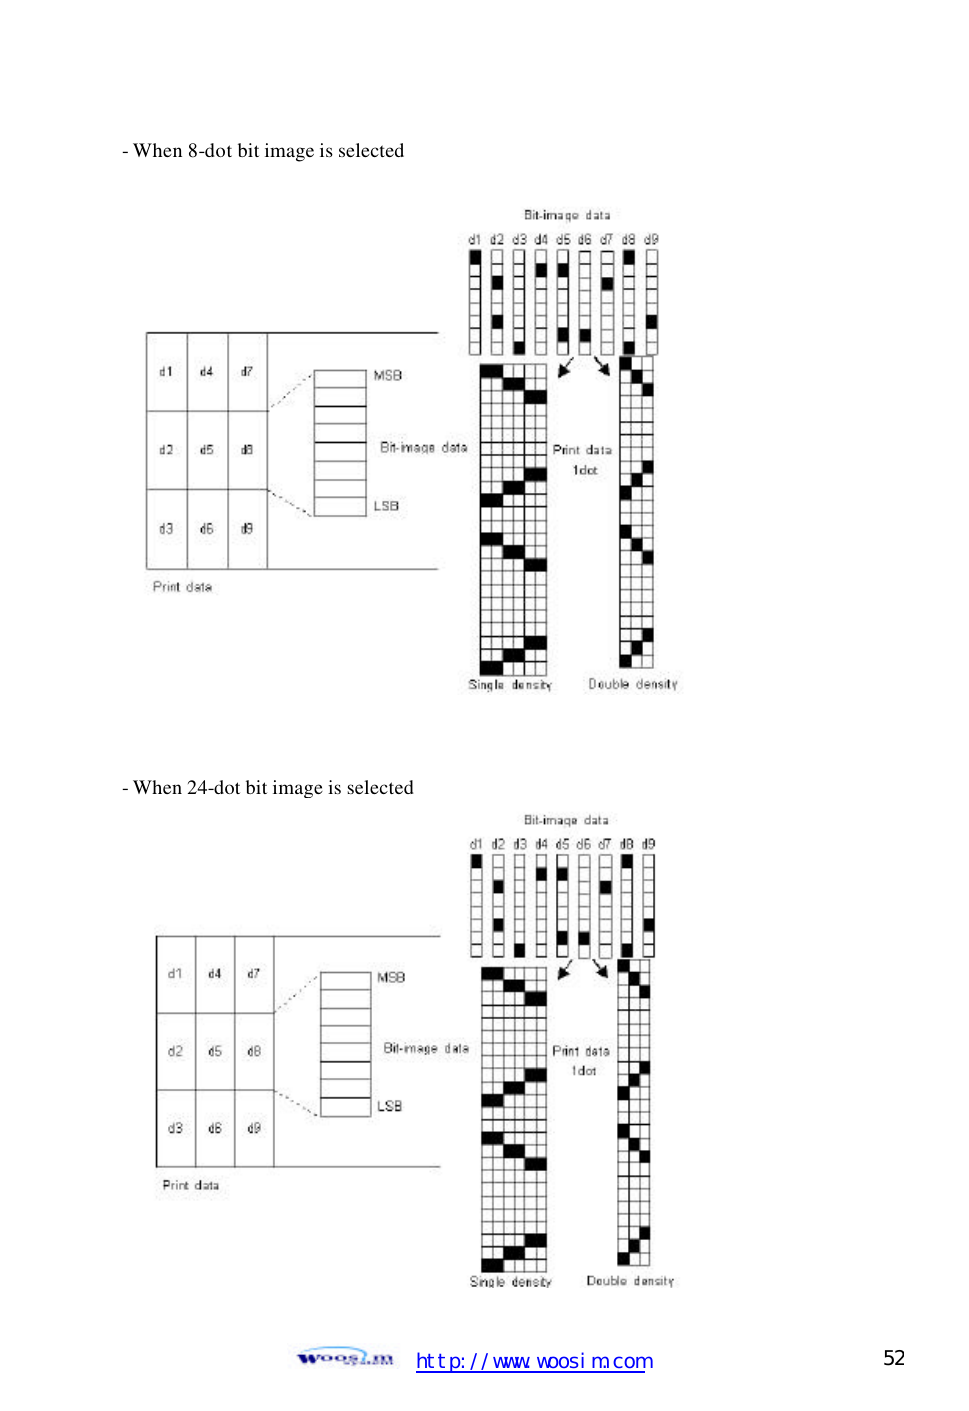  http://www.woosim.com 52                               - When 8-dot bit image is selected                 - When 24-dot bit image is selected  